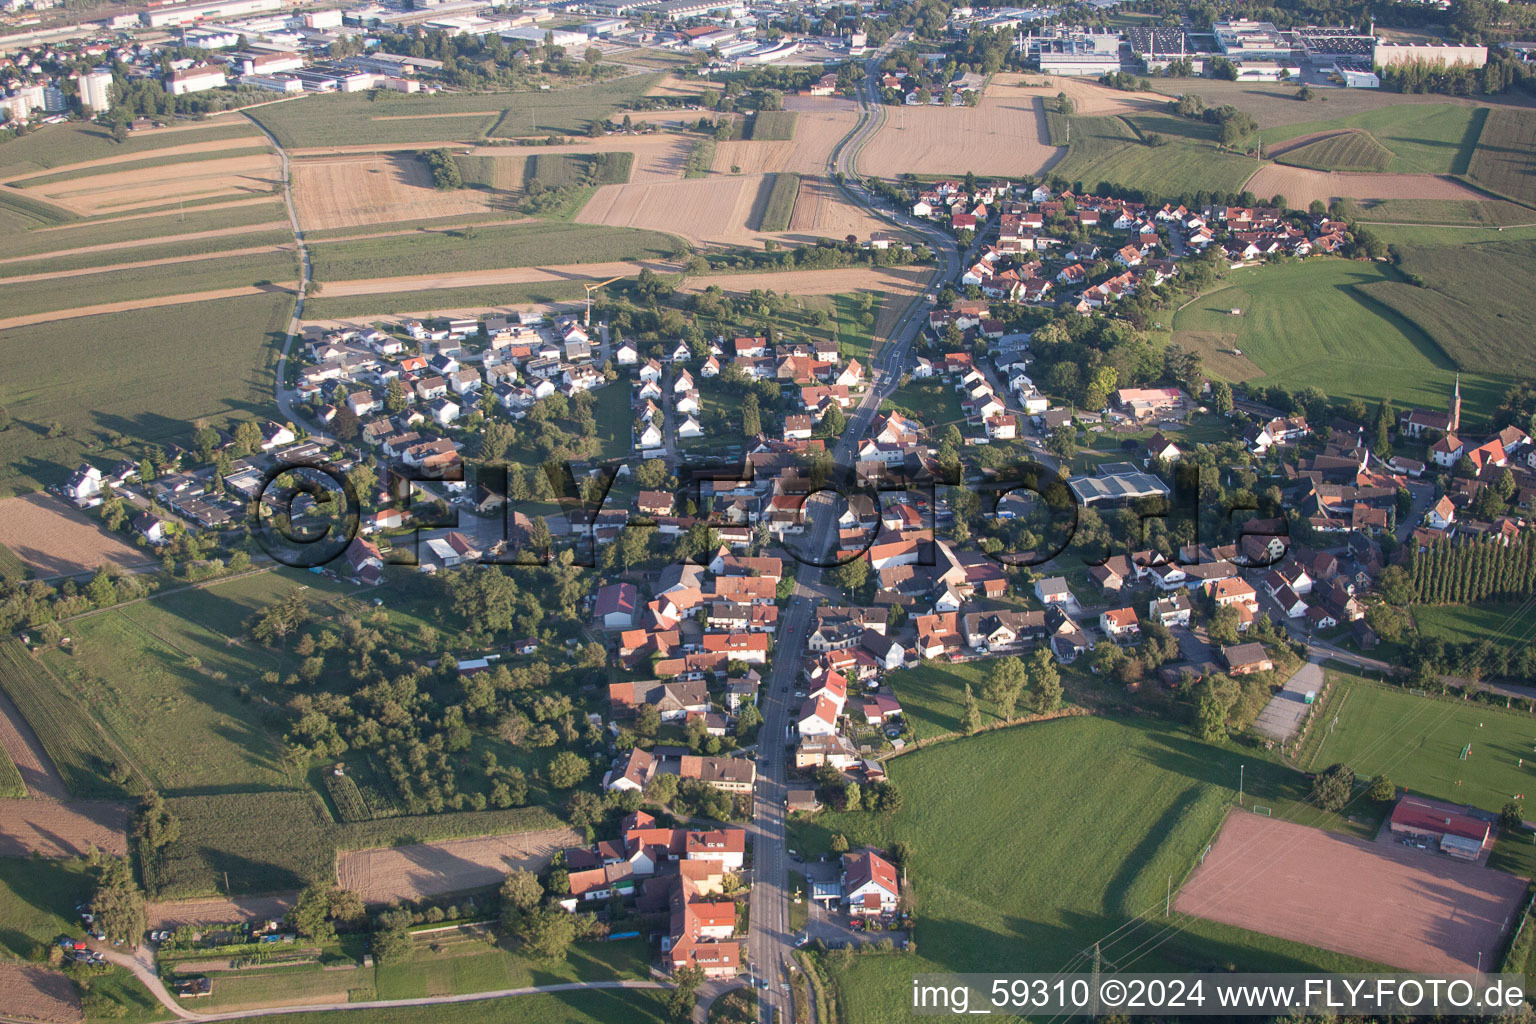 Vue aérienne de Champs agricoles et surfaces utilisables à le quartier Bühl in Offenburg dans le département Bade-Wurtemberg, Allemagne